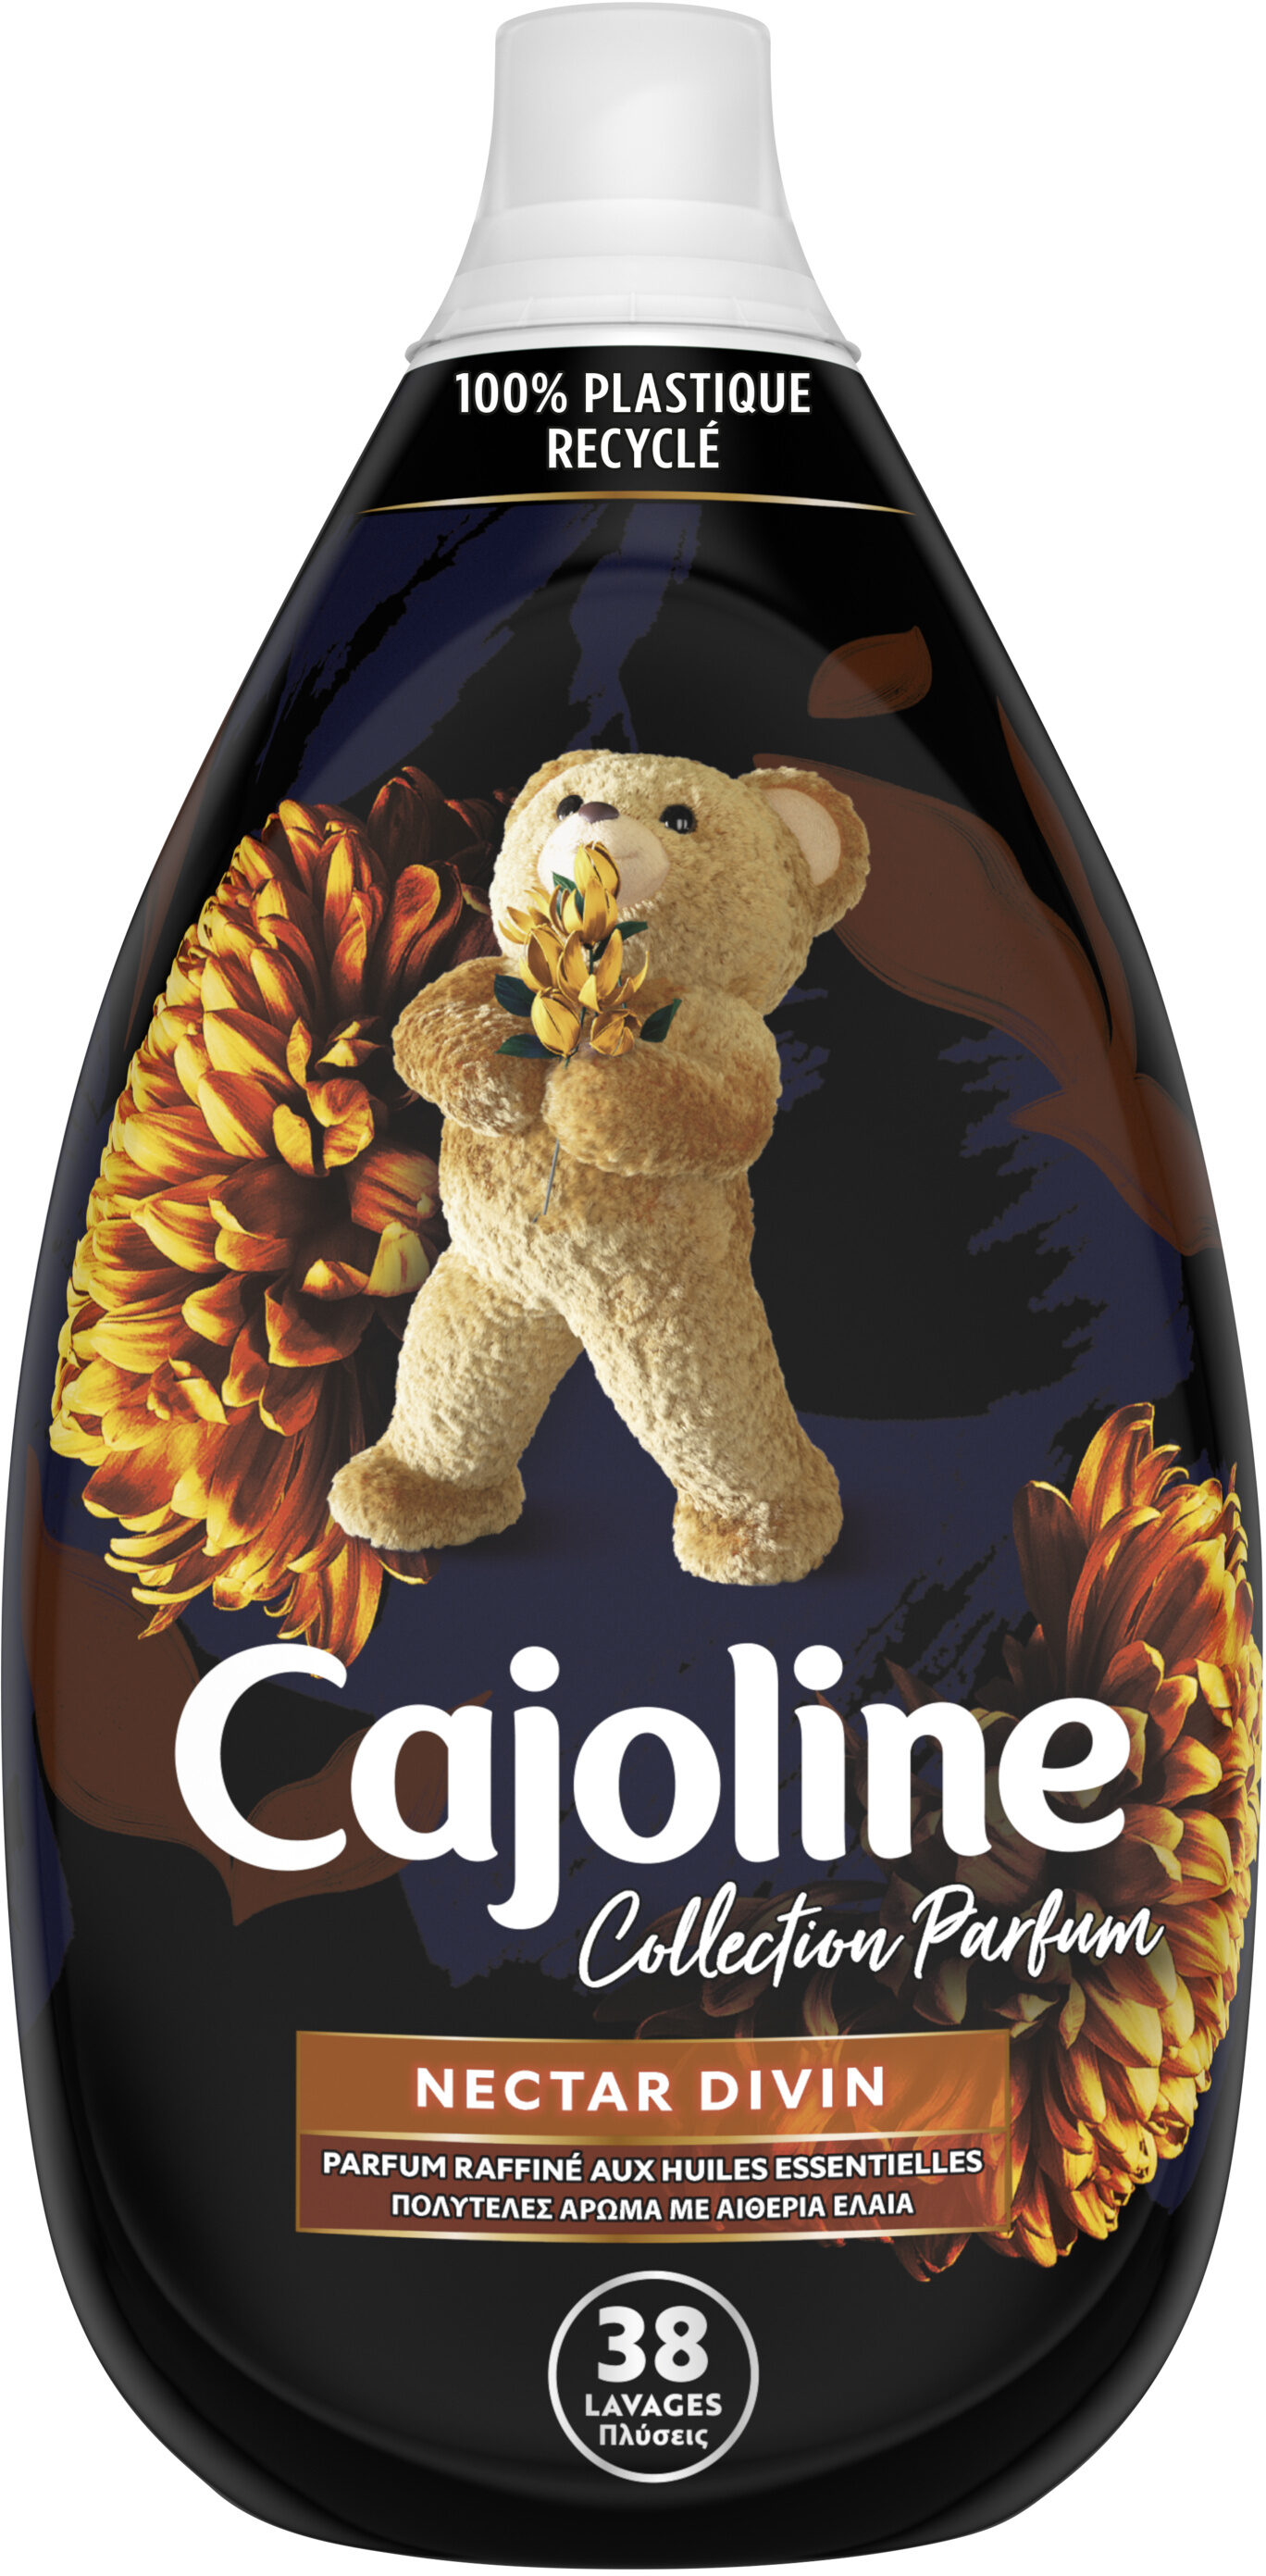 Cajoline Collection Parfum Assouplissant Concentré Nectar Divin 950ml - 38 Lavages - Product - fr